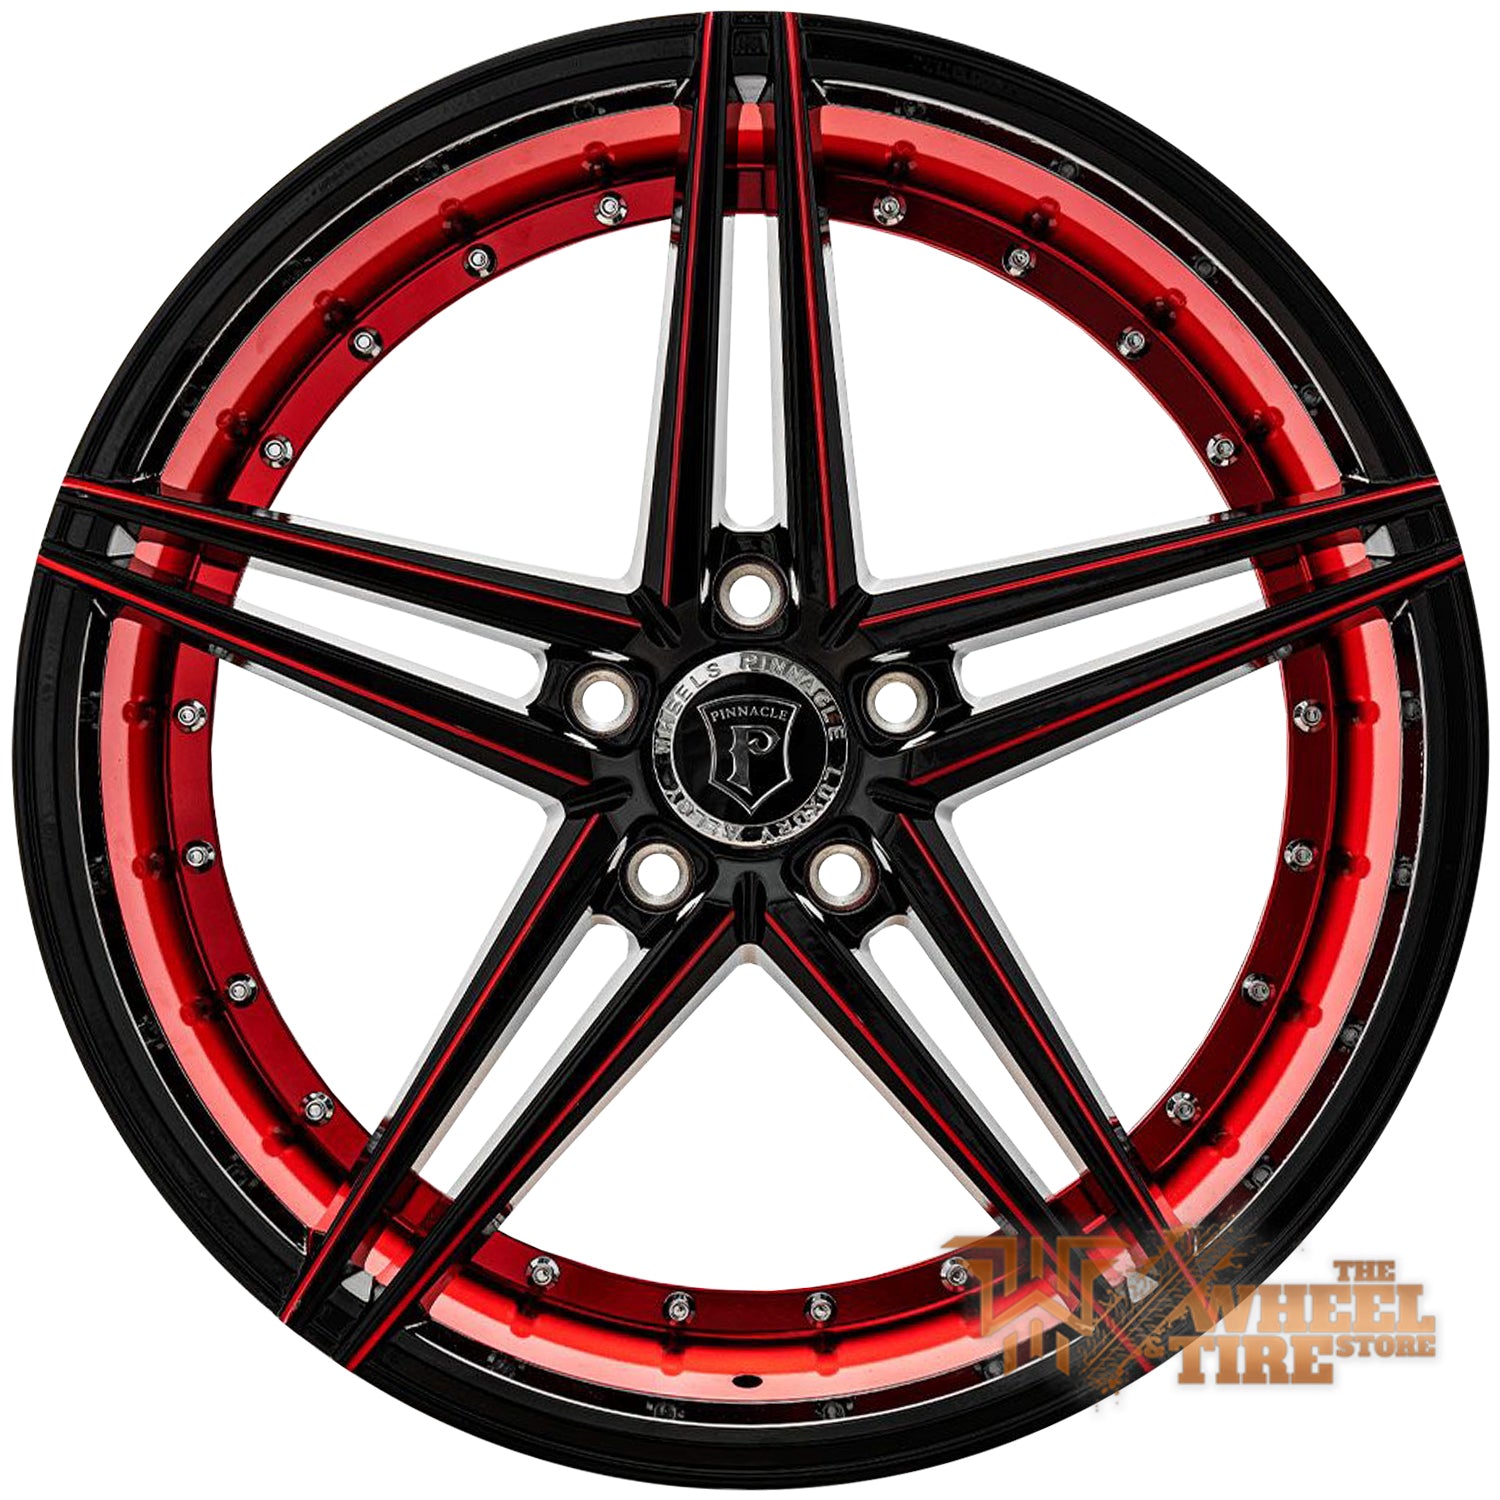 Pinnacle P206 'Savage' Wheel in Gloss Black Inner Red (Set of 4)